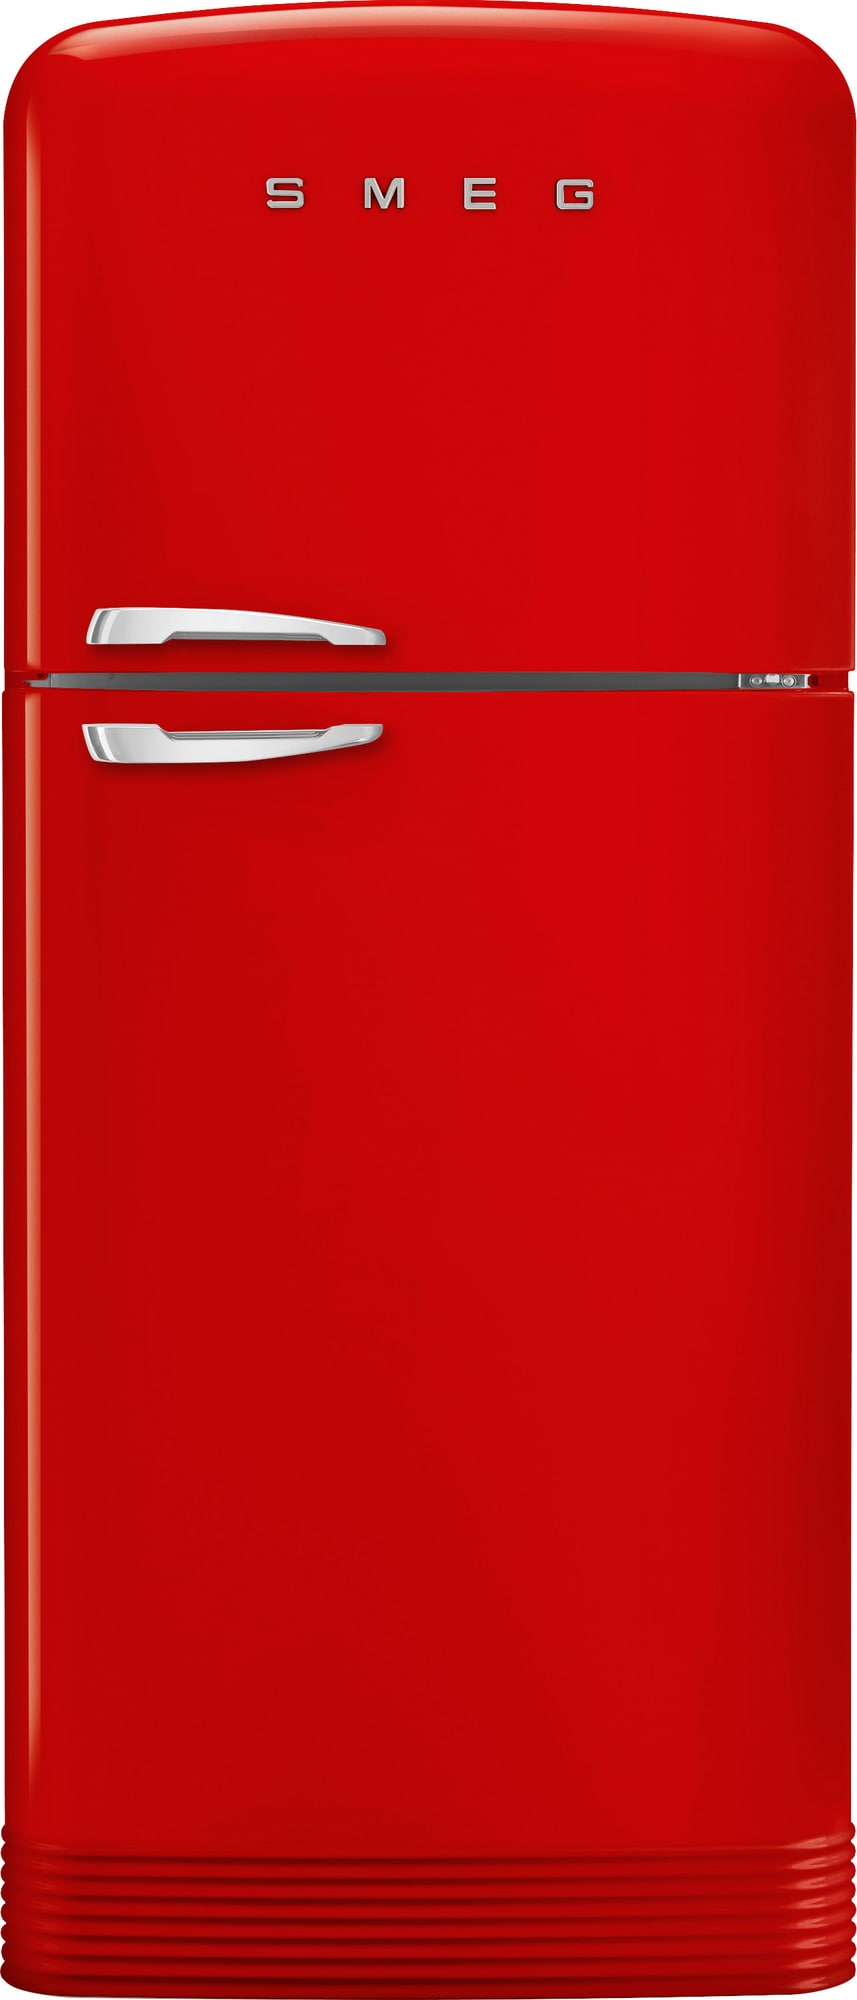 Smeg 50 s Style kølefryseskab FAB50RRD5 (rød)